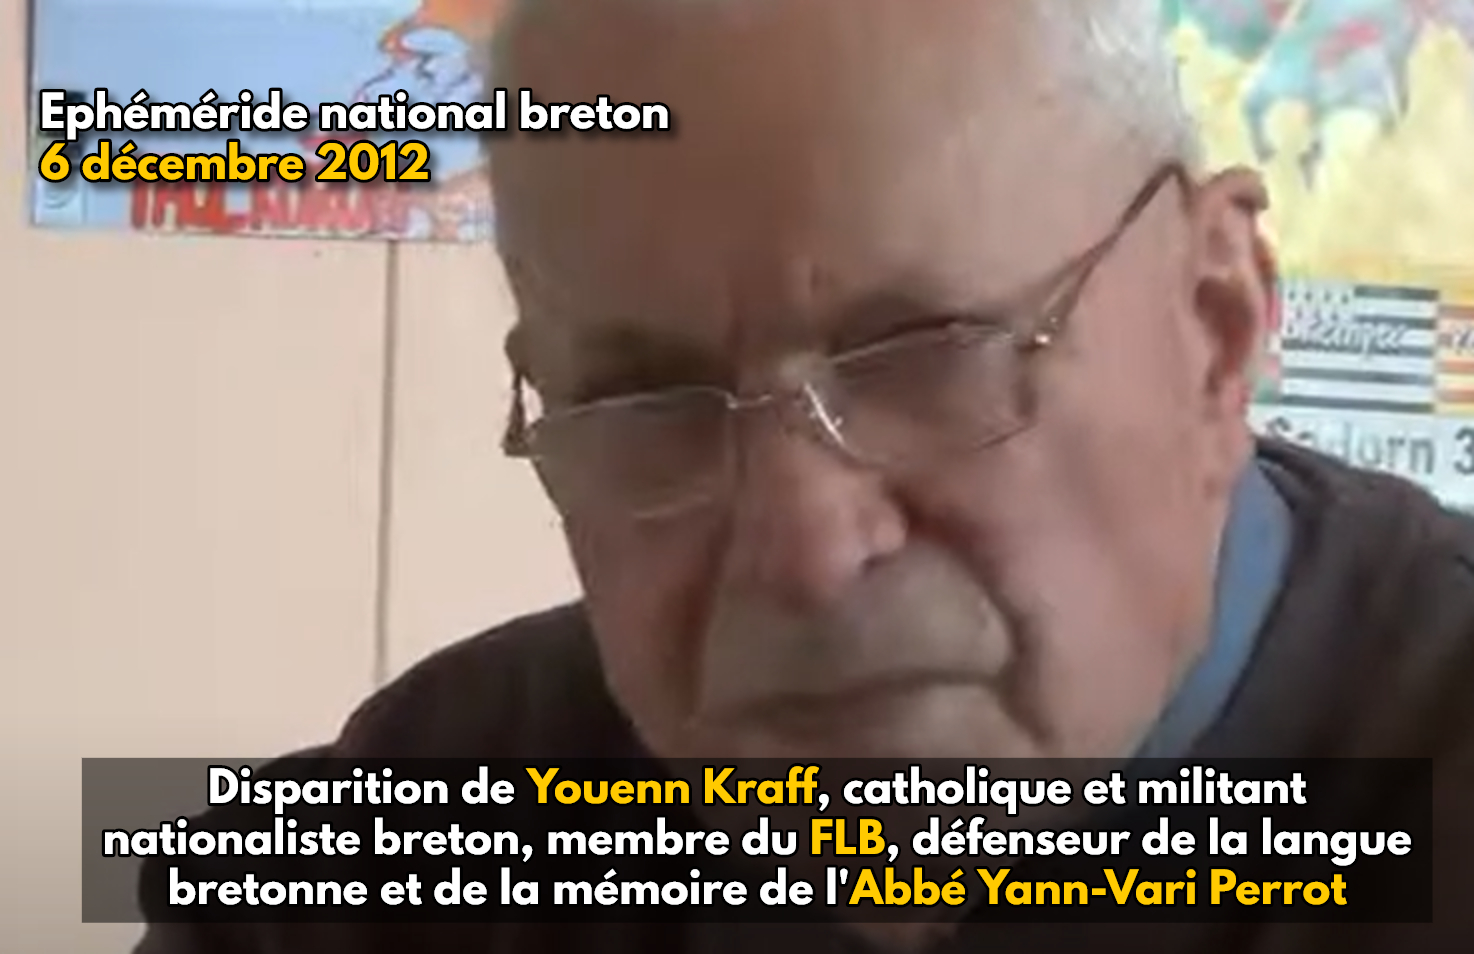 Ephéméride national breton : 6 décembre 2012, disparition de Youenn Kraff, défenseur de la langue bretonne et militant nationaliste